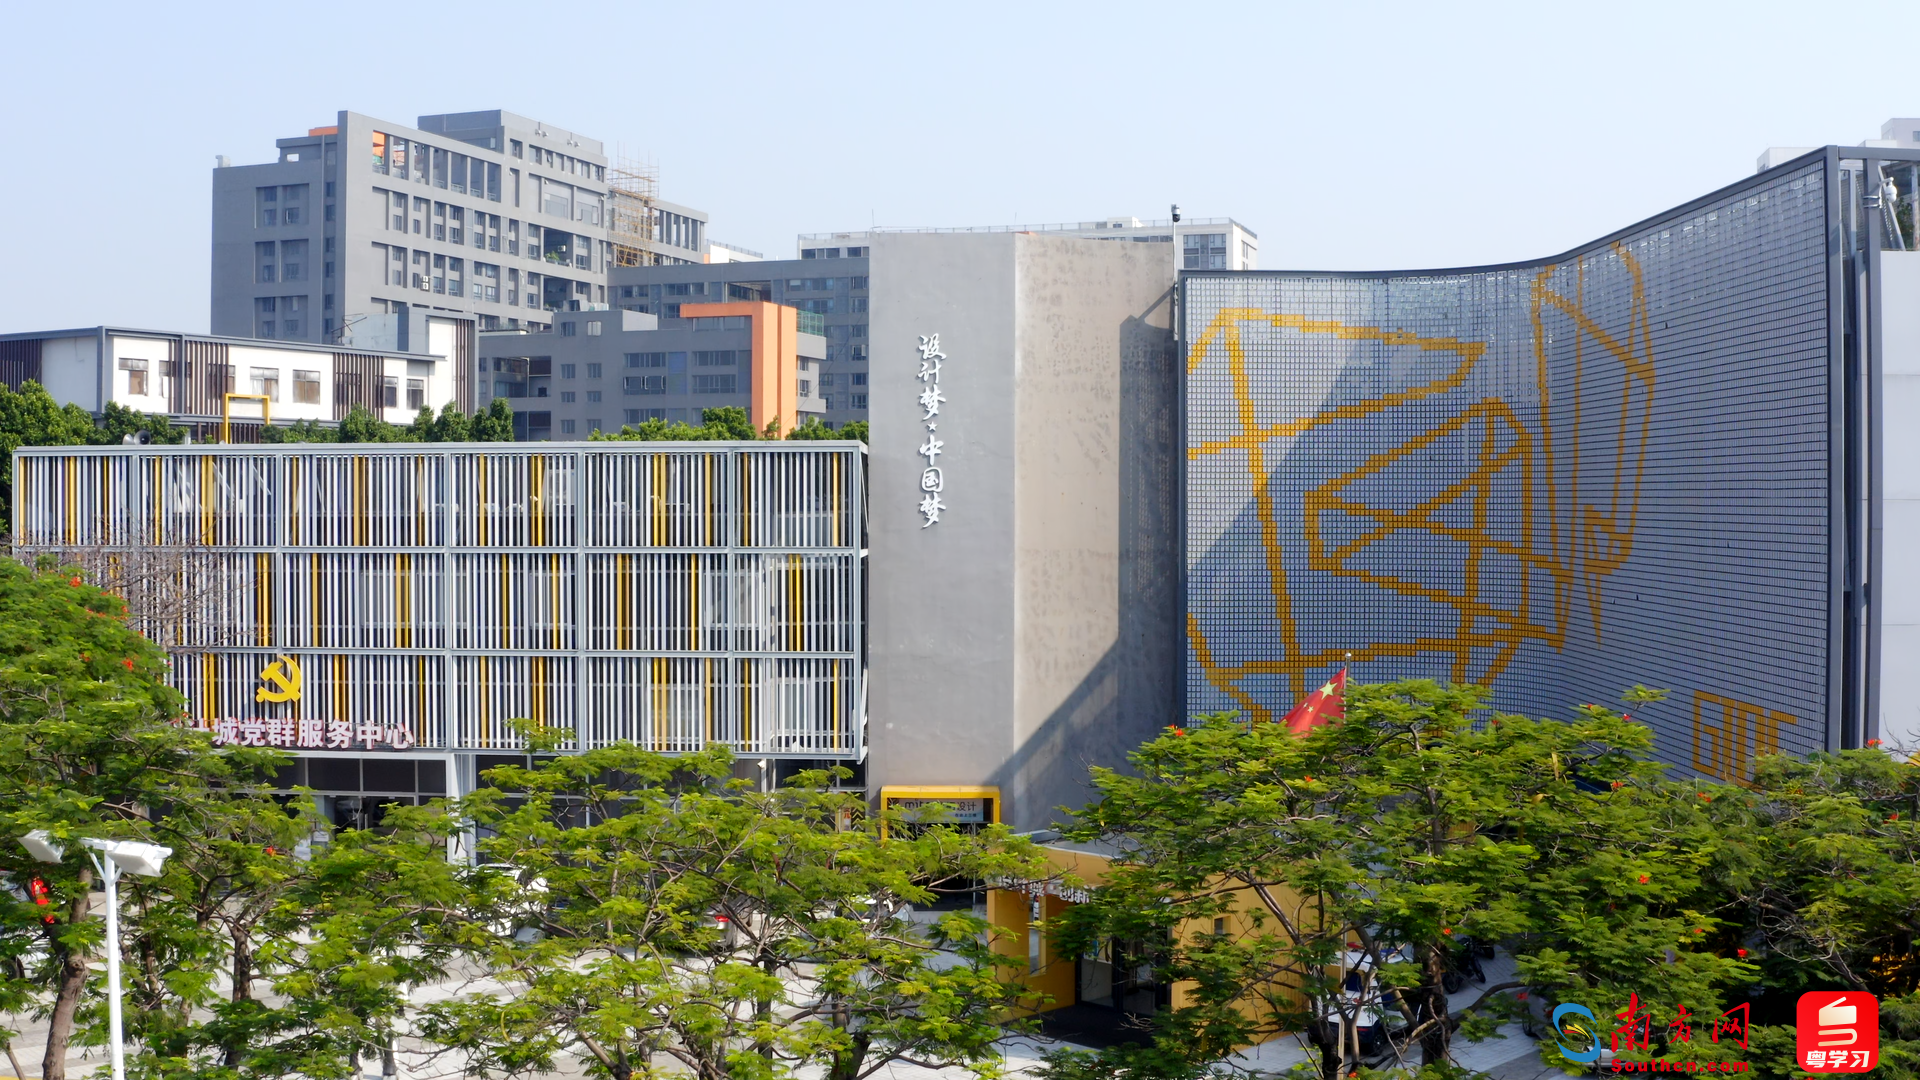 广东工业设计城的外墙上，刻着“设计梦·中国梦”的标识。